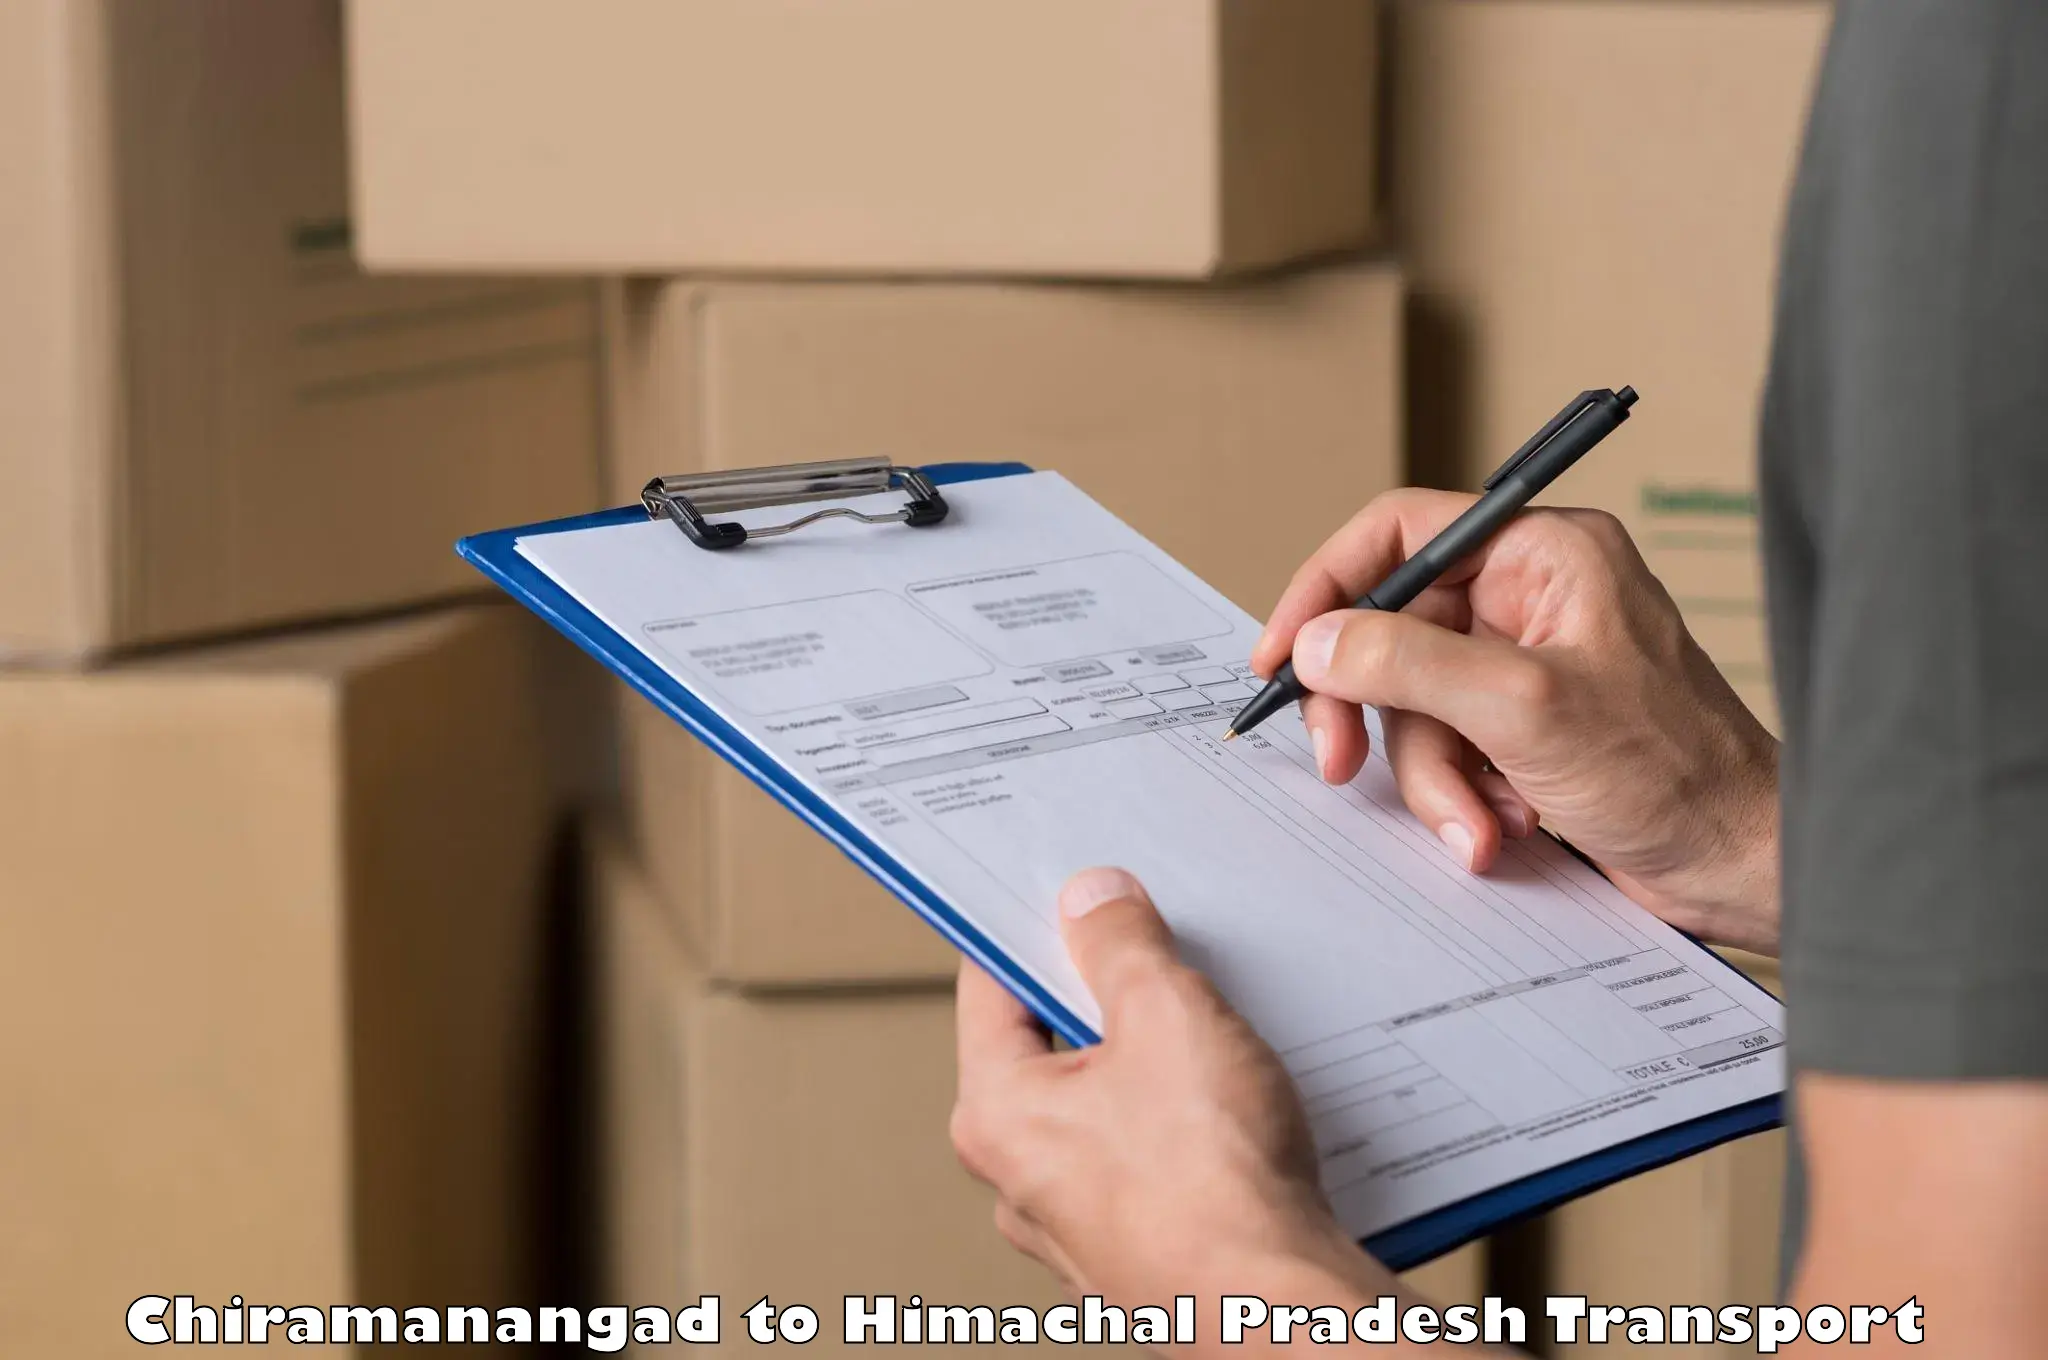 Furniture transport service Chiramanangad to Sandhol